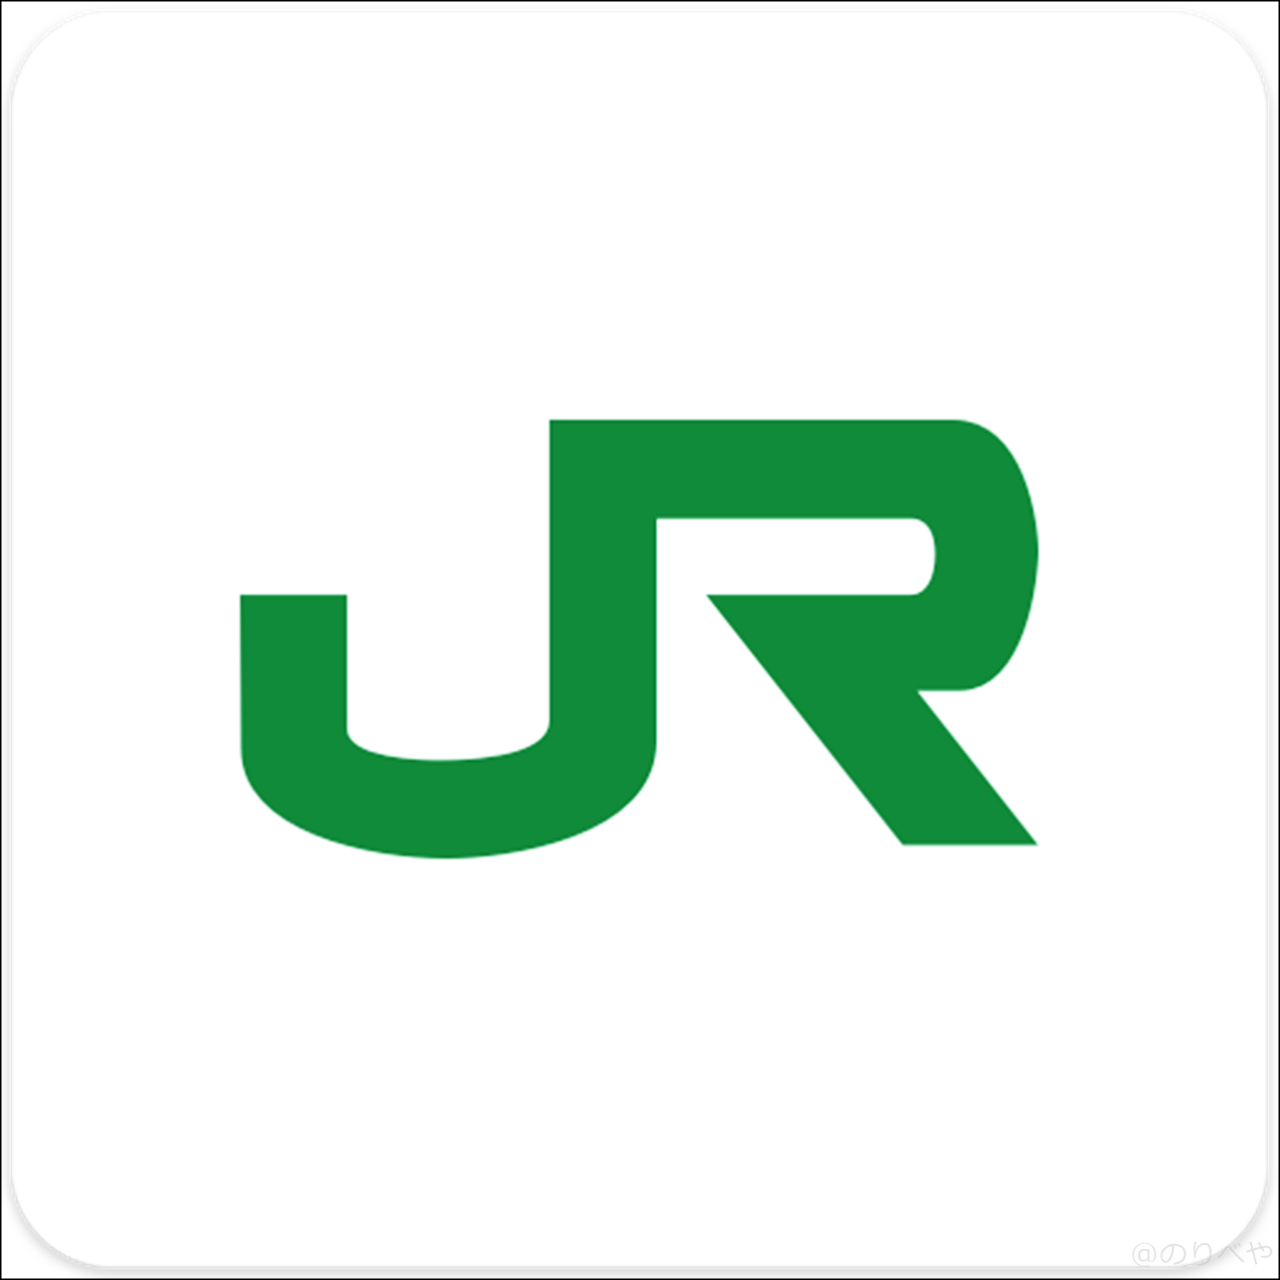 駅のコインロッカーを探すために「JR東日本アプリをダウンロード」をする【リアルタイムで空いているか検索】